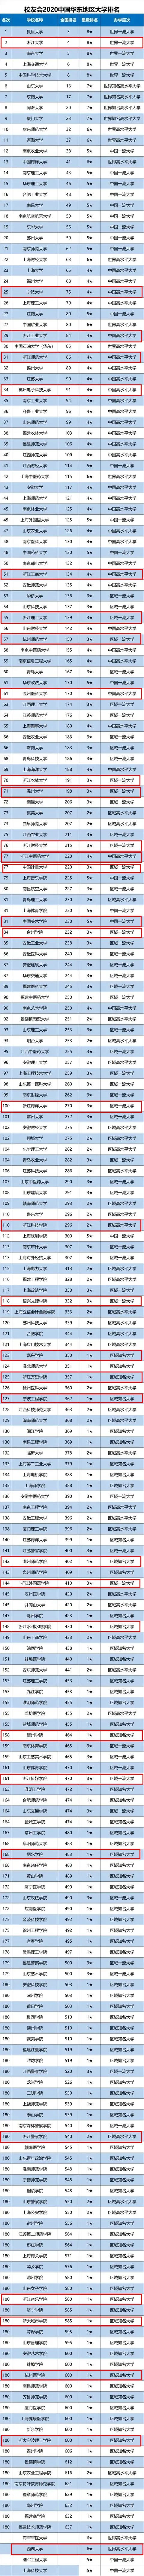 2020浙江高考学校排名_最新!2020年宁波中学排名一览表